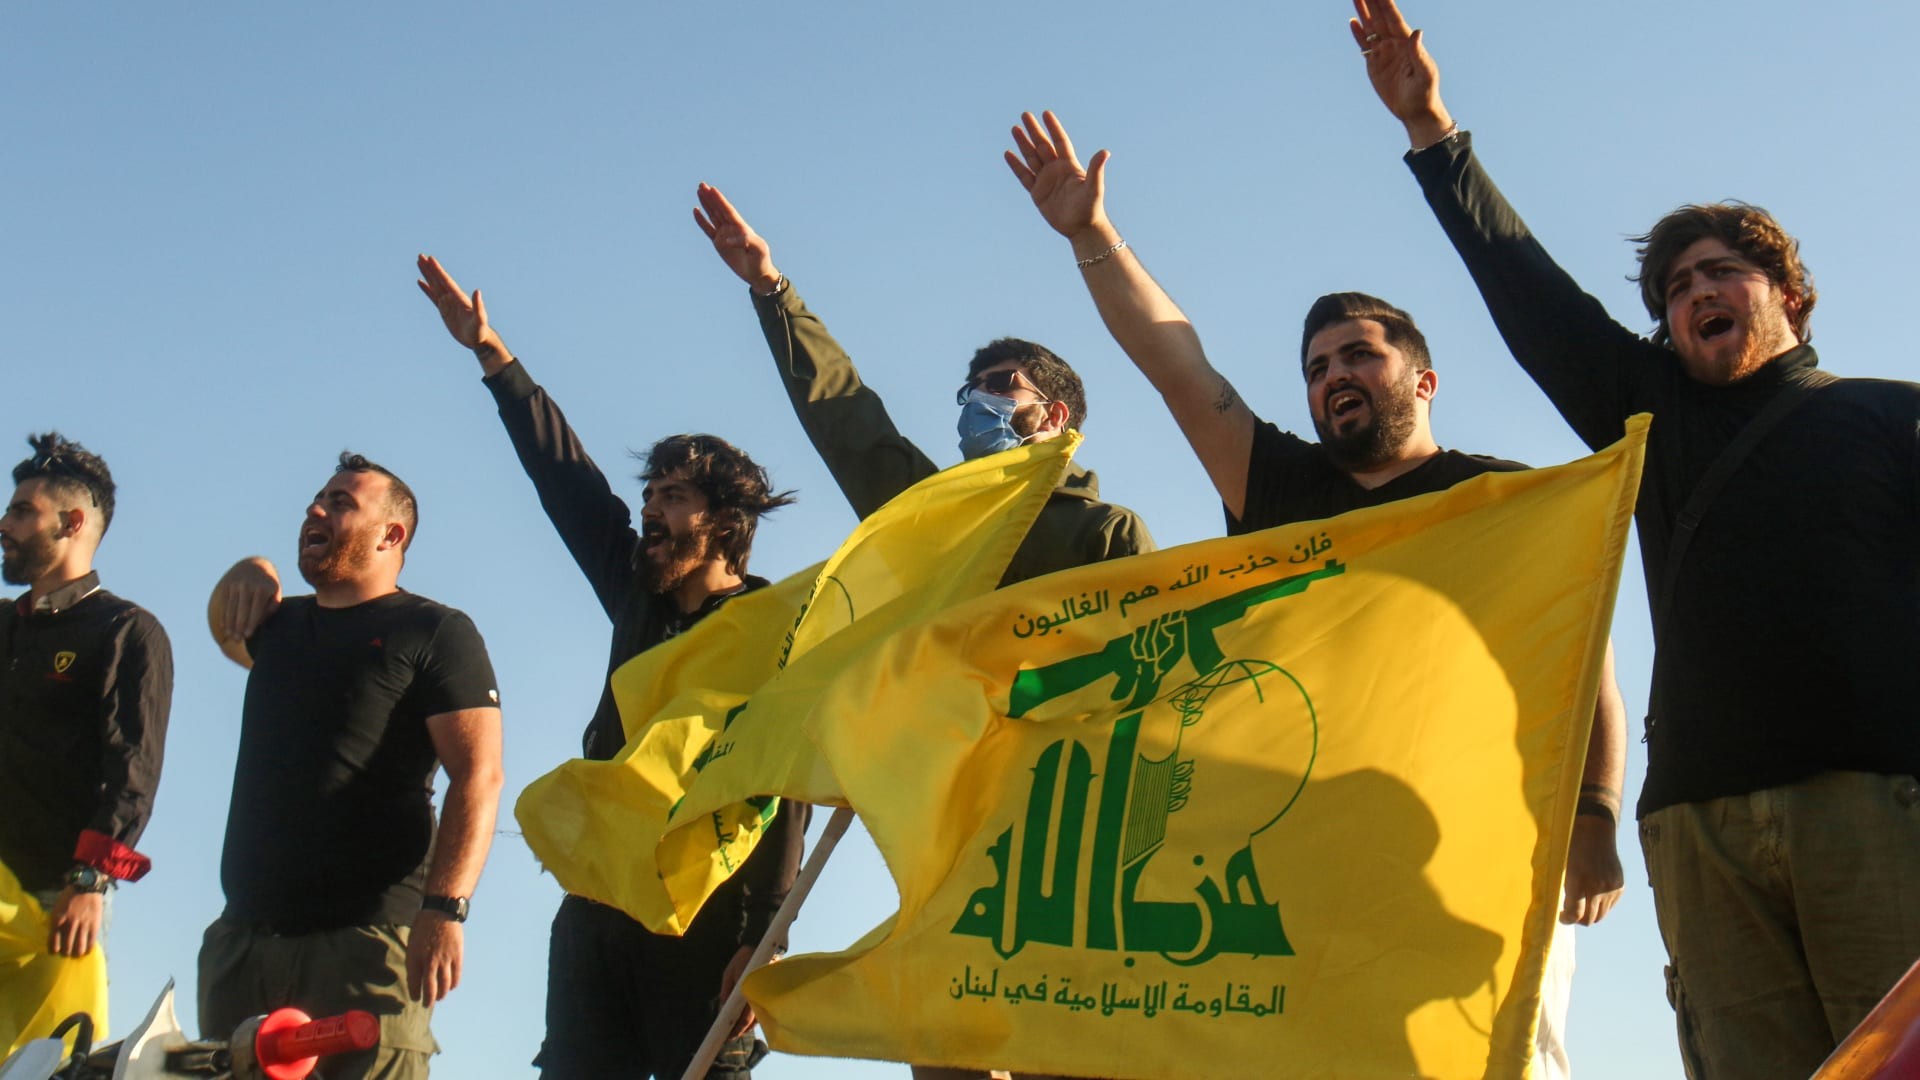 فيديو "أدلة" تورط حزب الله في اليمن: يضع حكومة لبنان بموقف المتهم